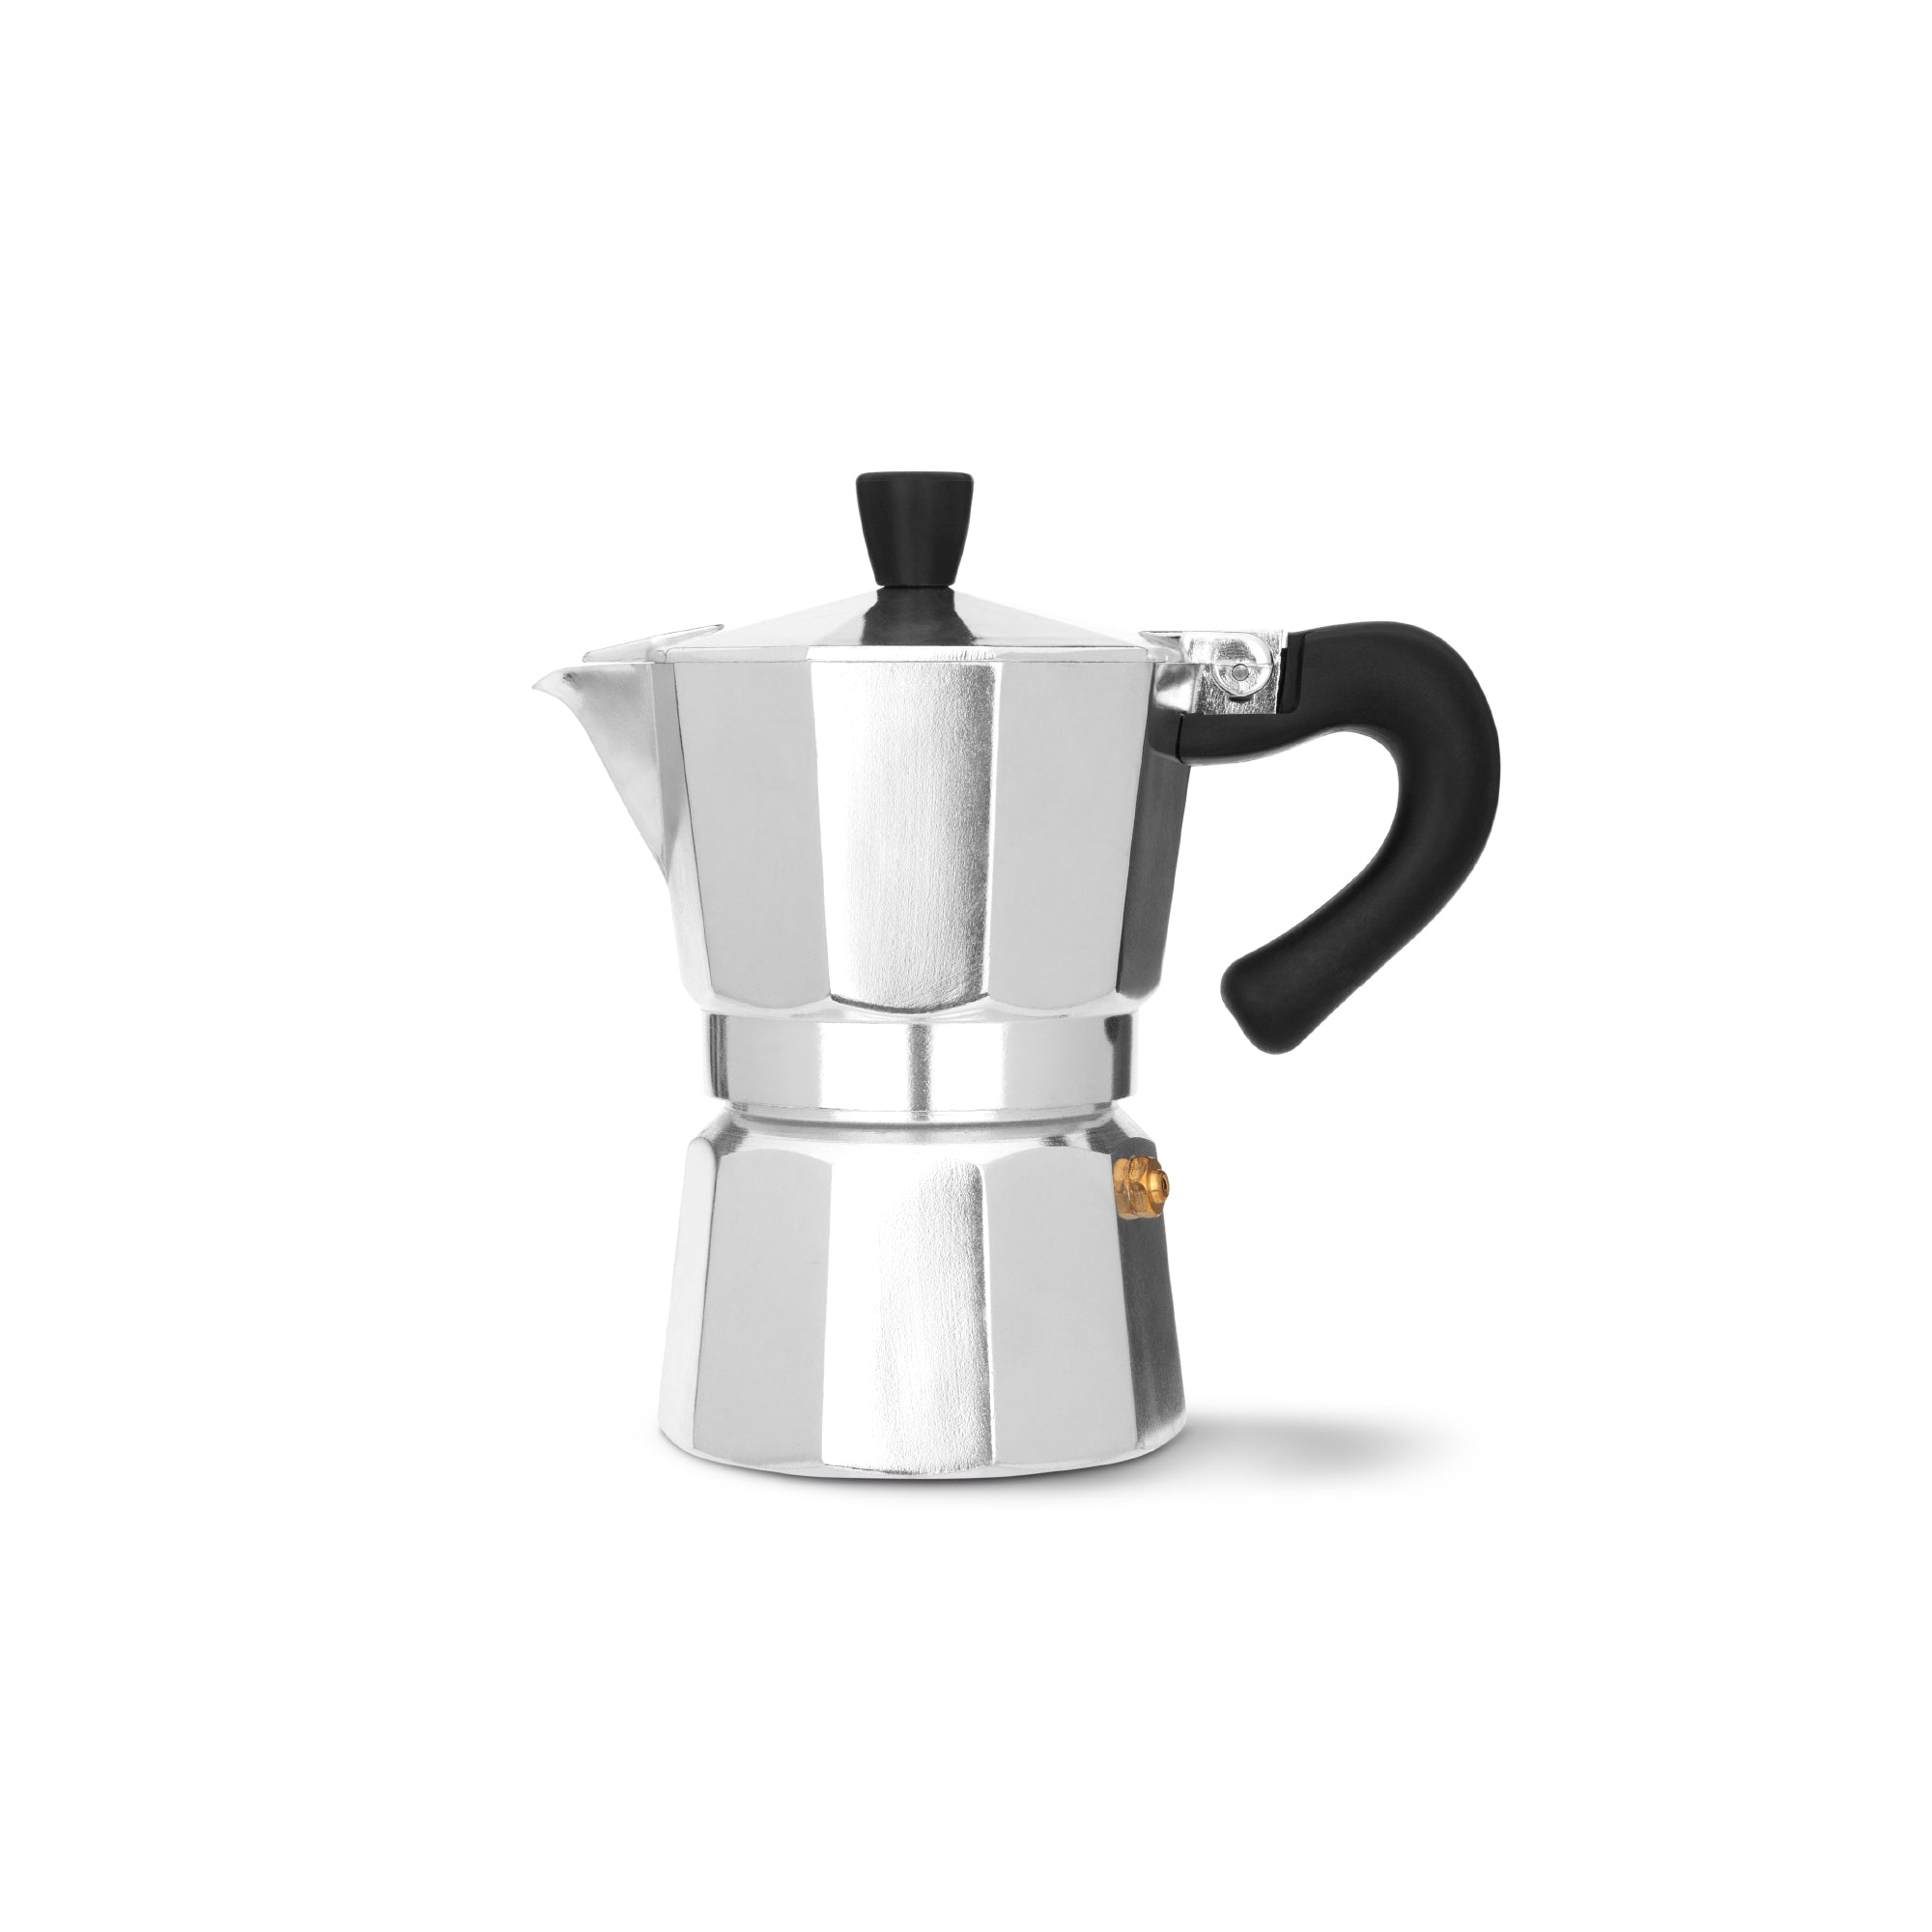 https://espresso-works.com/cdn/shop/products/espressoworks-three-cup-moka-pot-stovetop-espresso-maker_2000x.jpg?v=1604993394